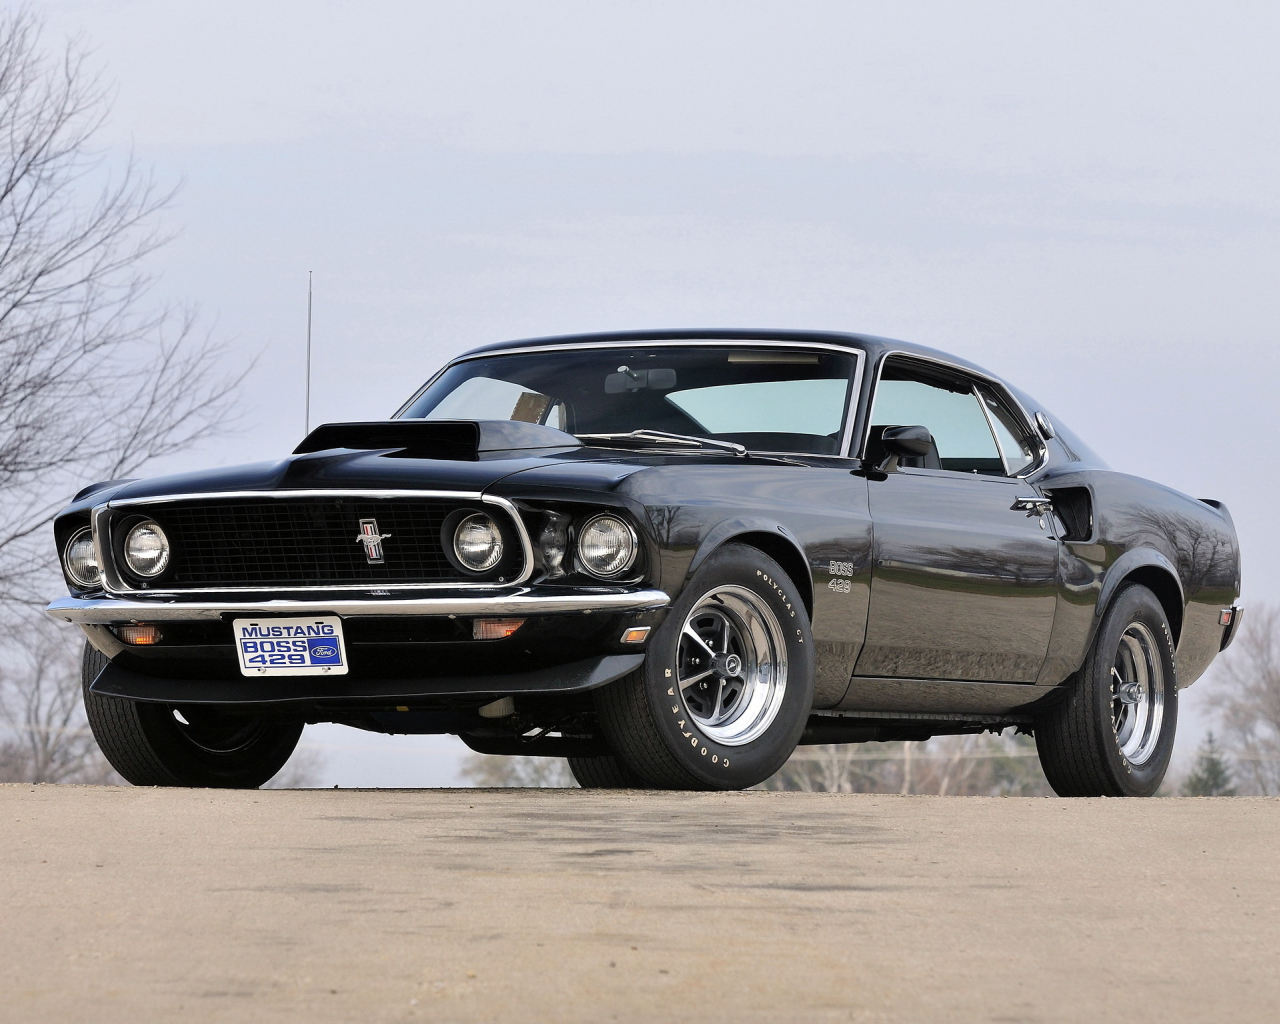 1969, 429, muscle car, mustang, форд, boss, ford, black, мустанг, мускул кар